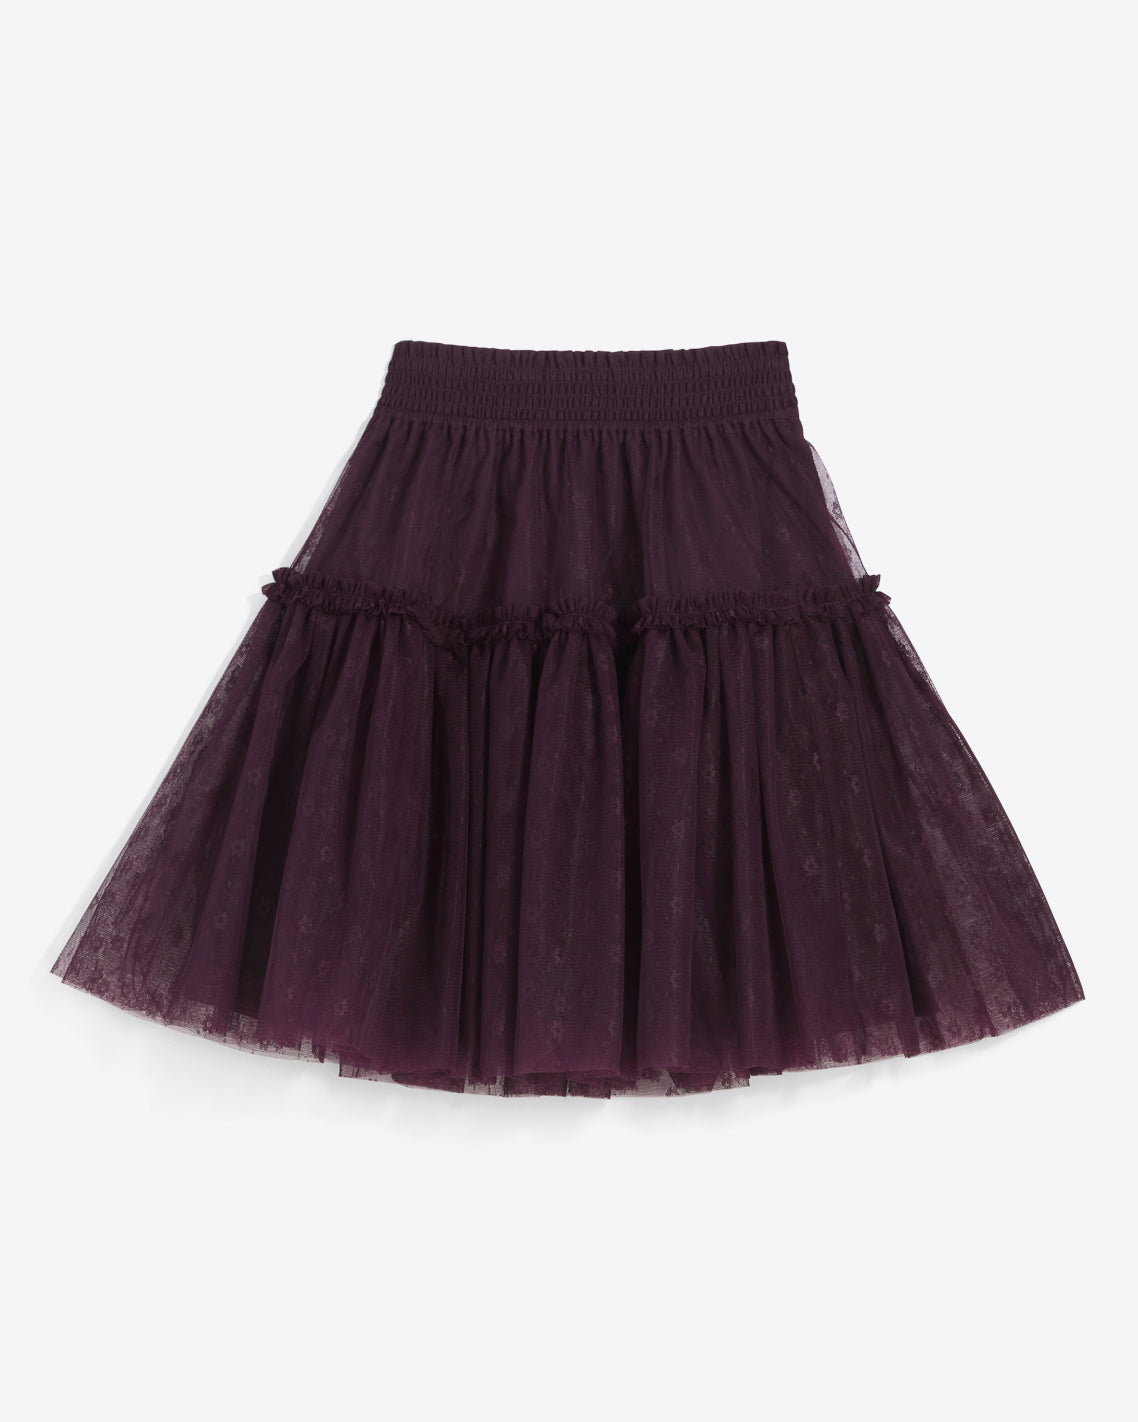 Mini Tiered Skirt in Plum Tulle